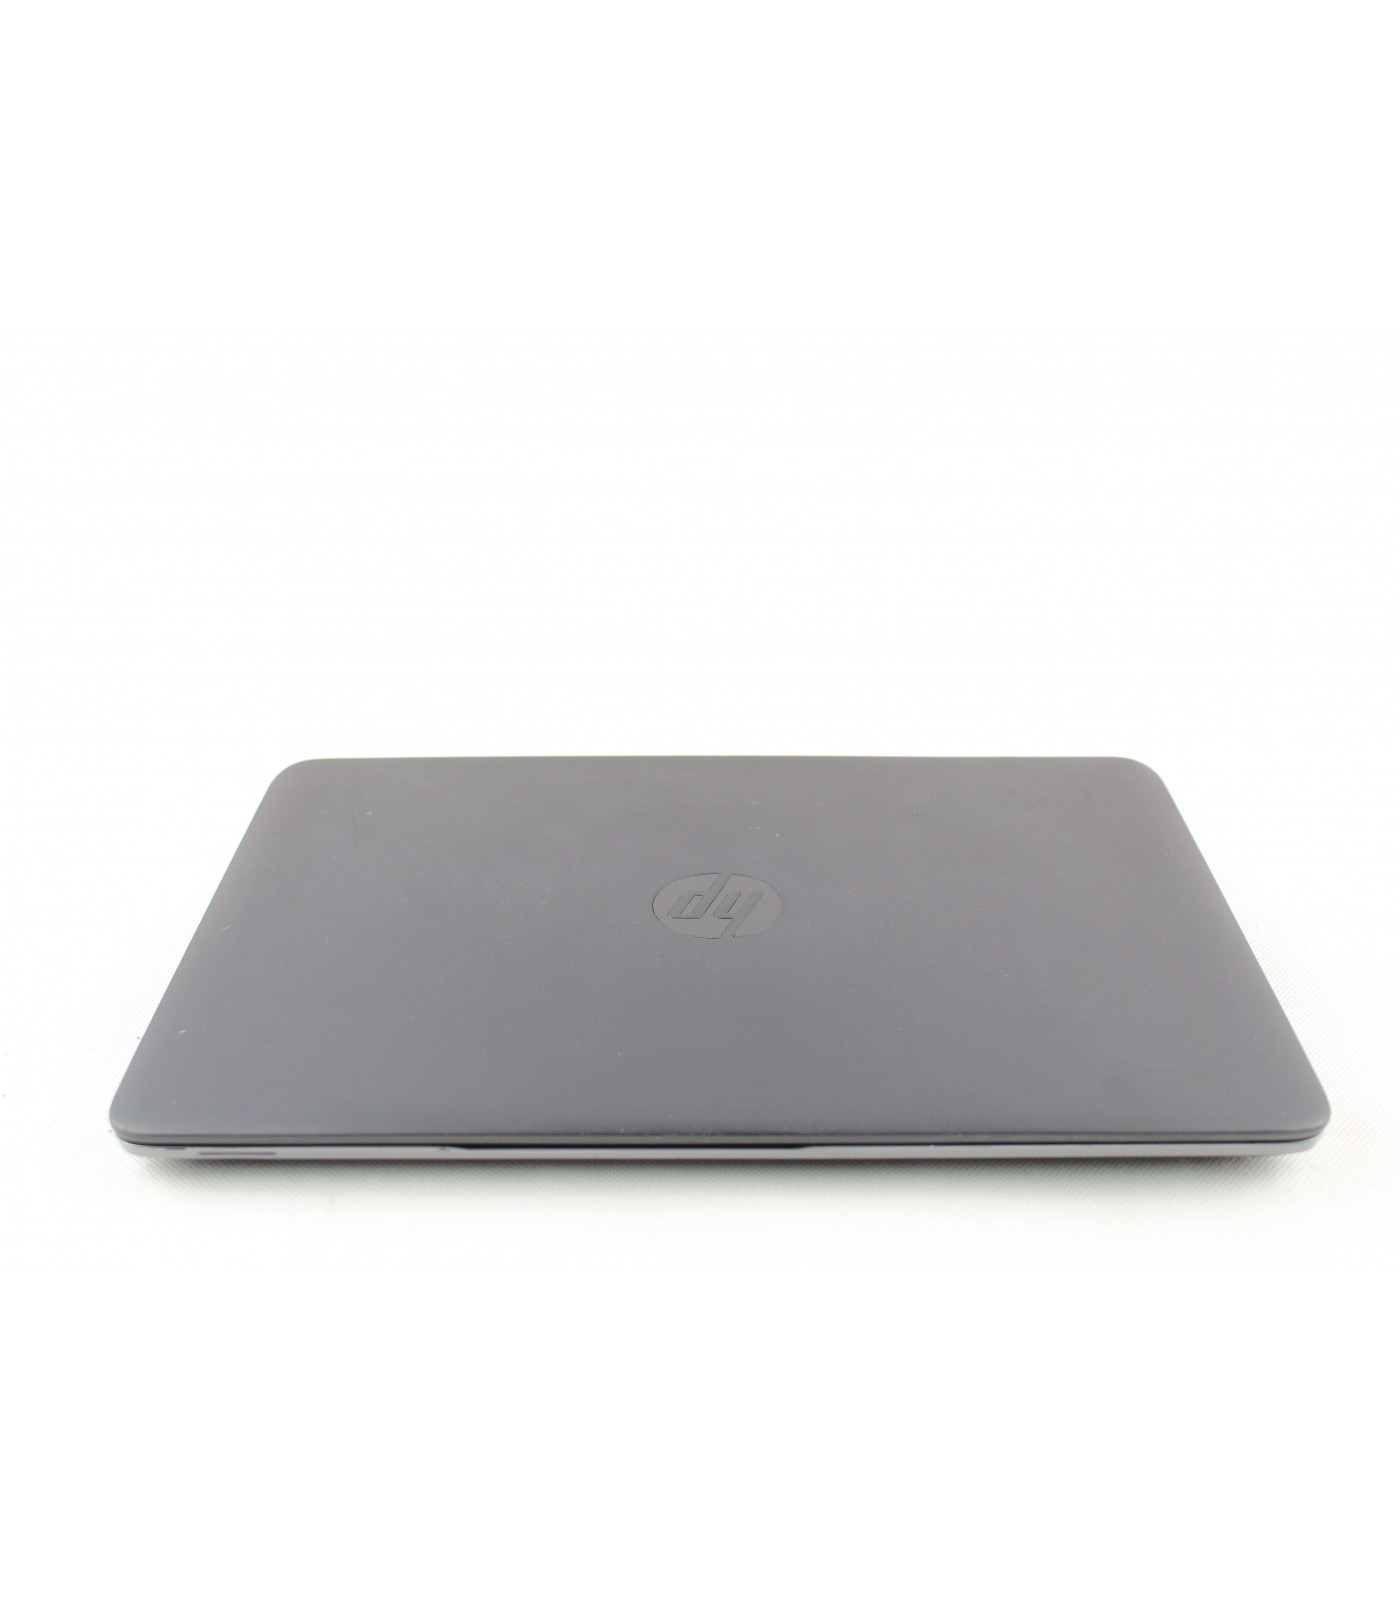 Poleasingowy laptop HP EliteBook 840 G1 z Intel Core i5-4200U w Klasie B